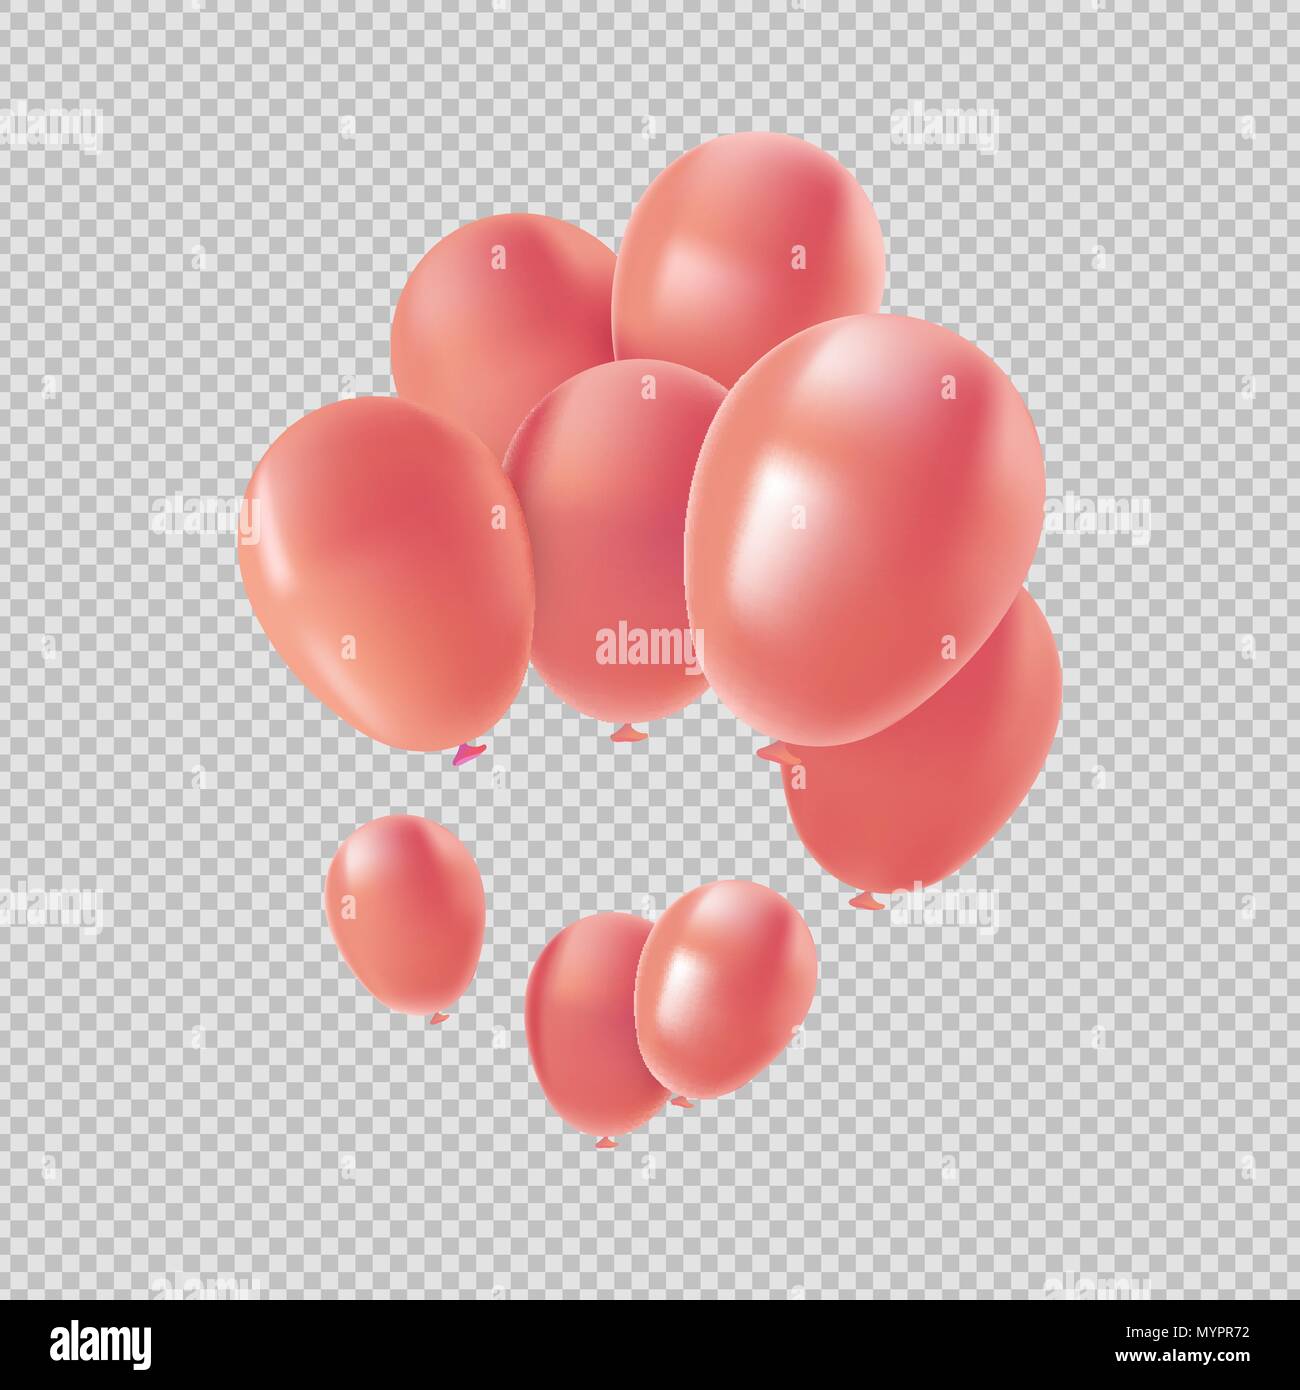 Pink Balloon, isolierte transparenter Hintergrund Elemente in metallischen Farben. Valentinstag Dekoration oder Partei Ornament. EPS 10 Vektor. Stock Vektor